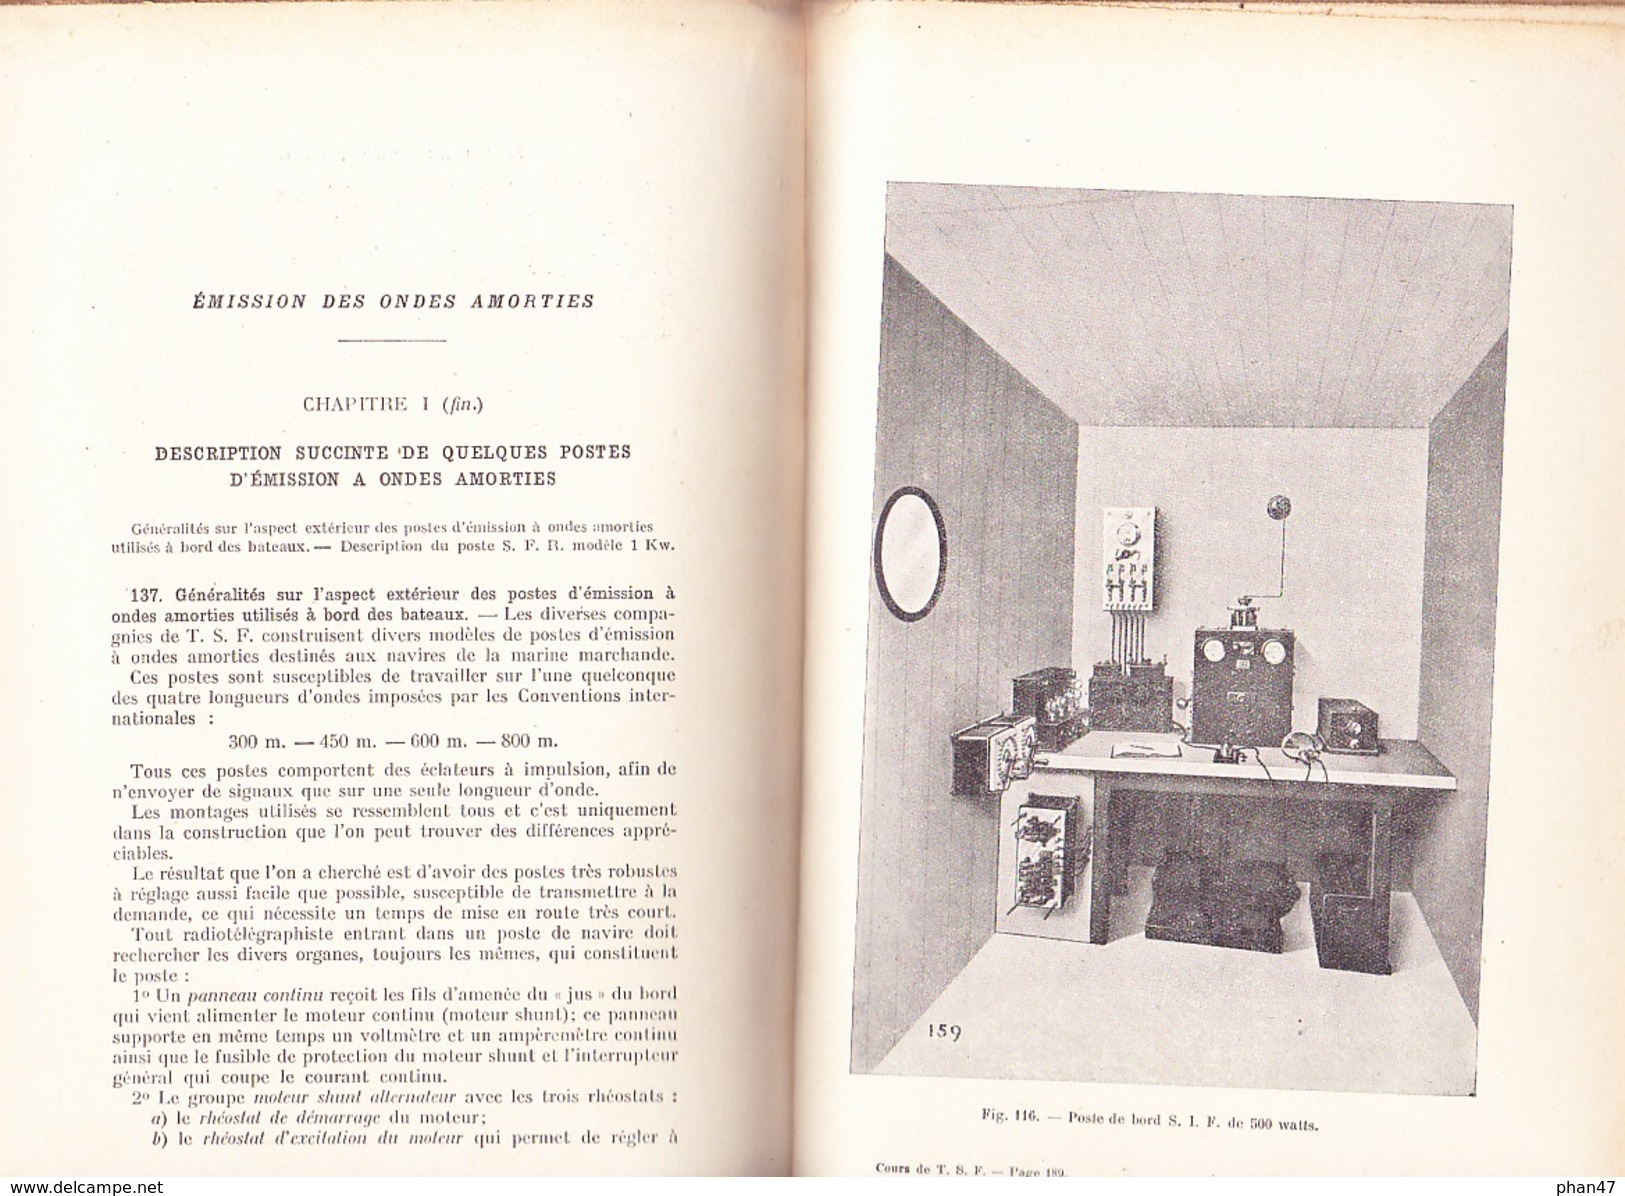 COURS DE T.S.F. Par M. VEAUX, Programme Du Certificat D'Officier Radiotélégraphiste Marine Marchande, Ed. EYROLLES 1931 - Über 18